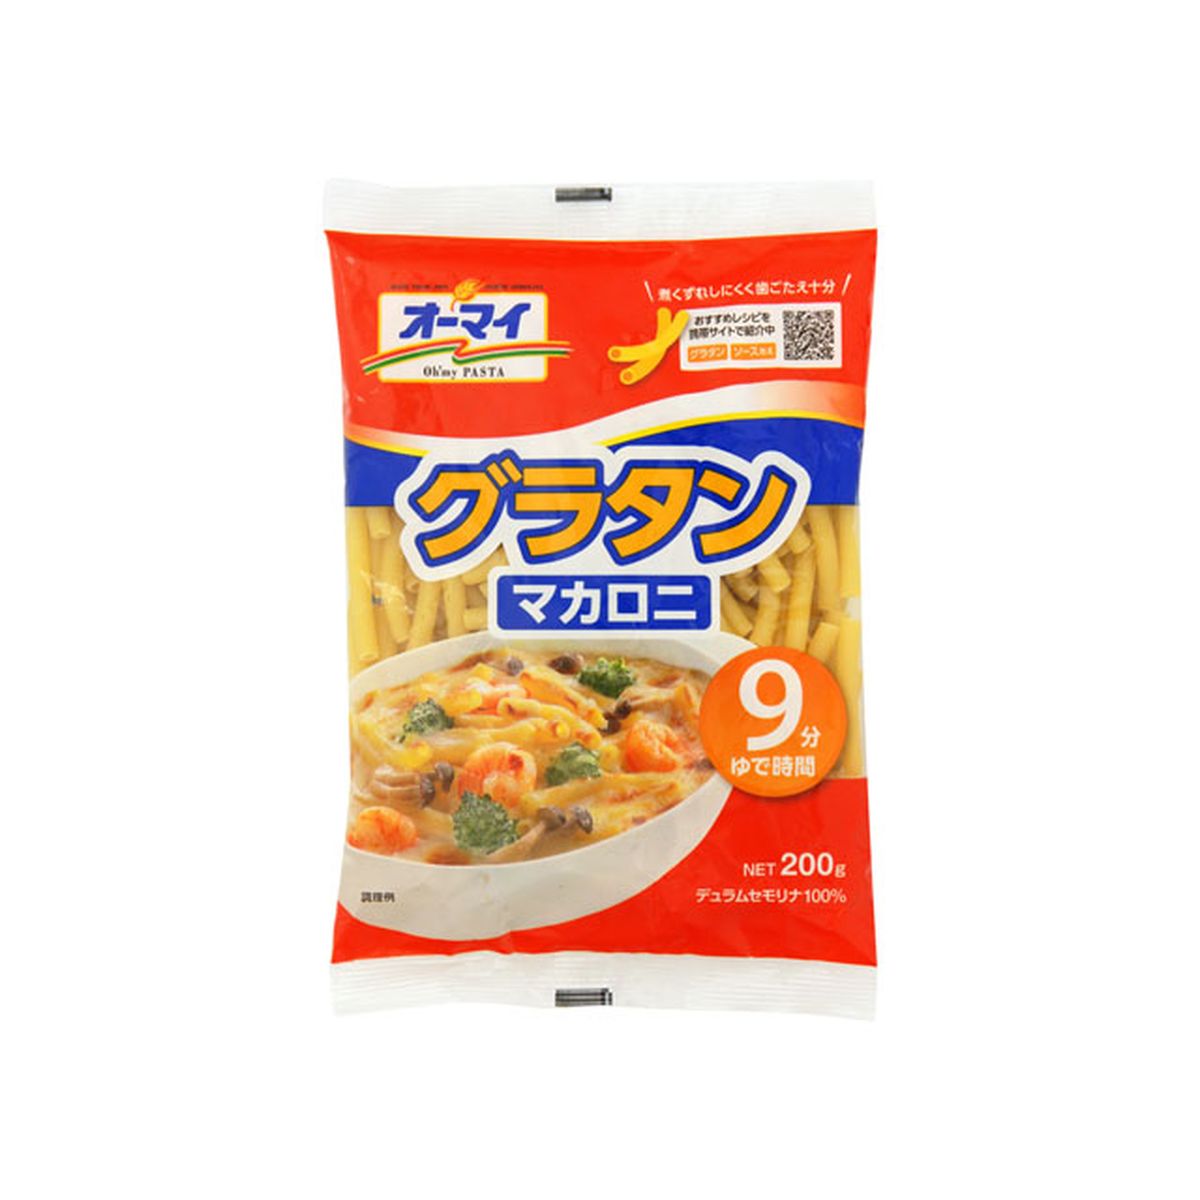 【12個入り】日本製粉 オーマイ グラタン マカロニ 200g